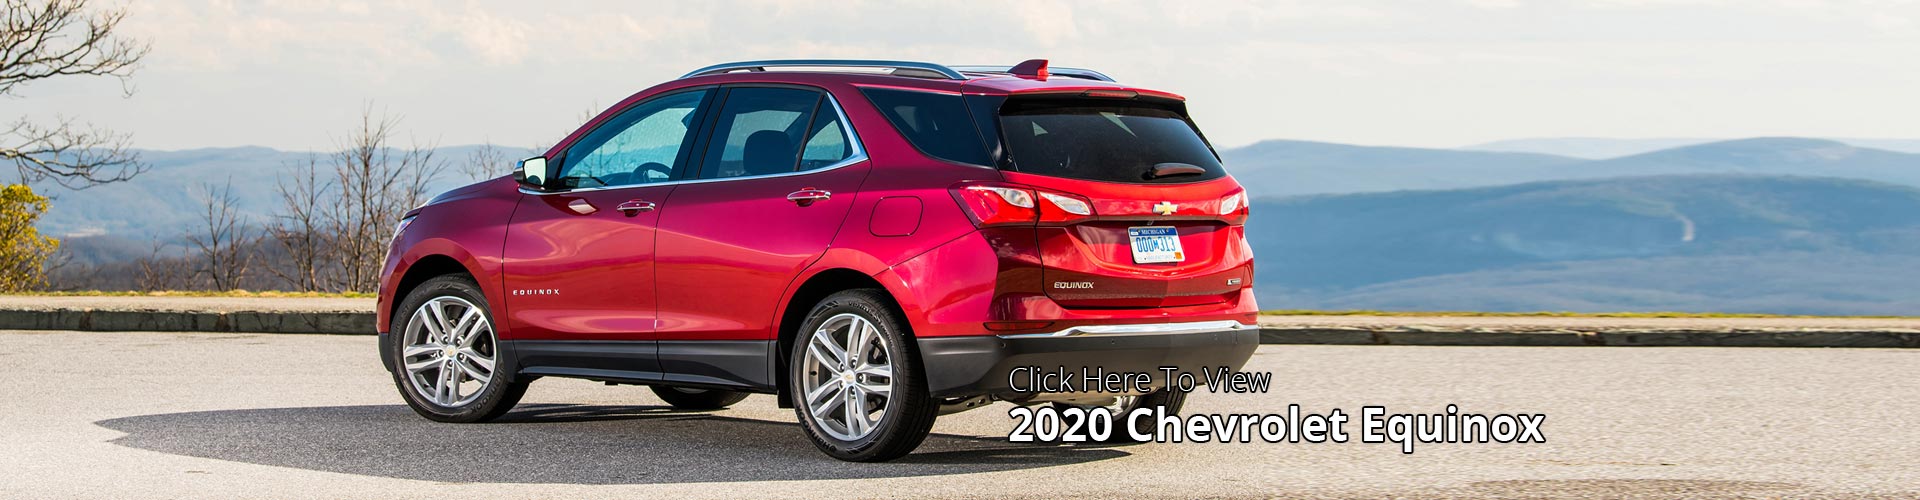 Vannoy Chevrolet-2020 Chevrolet Models